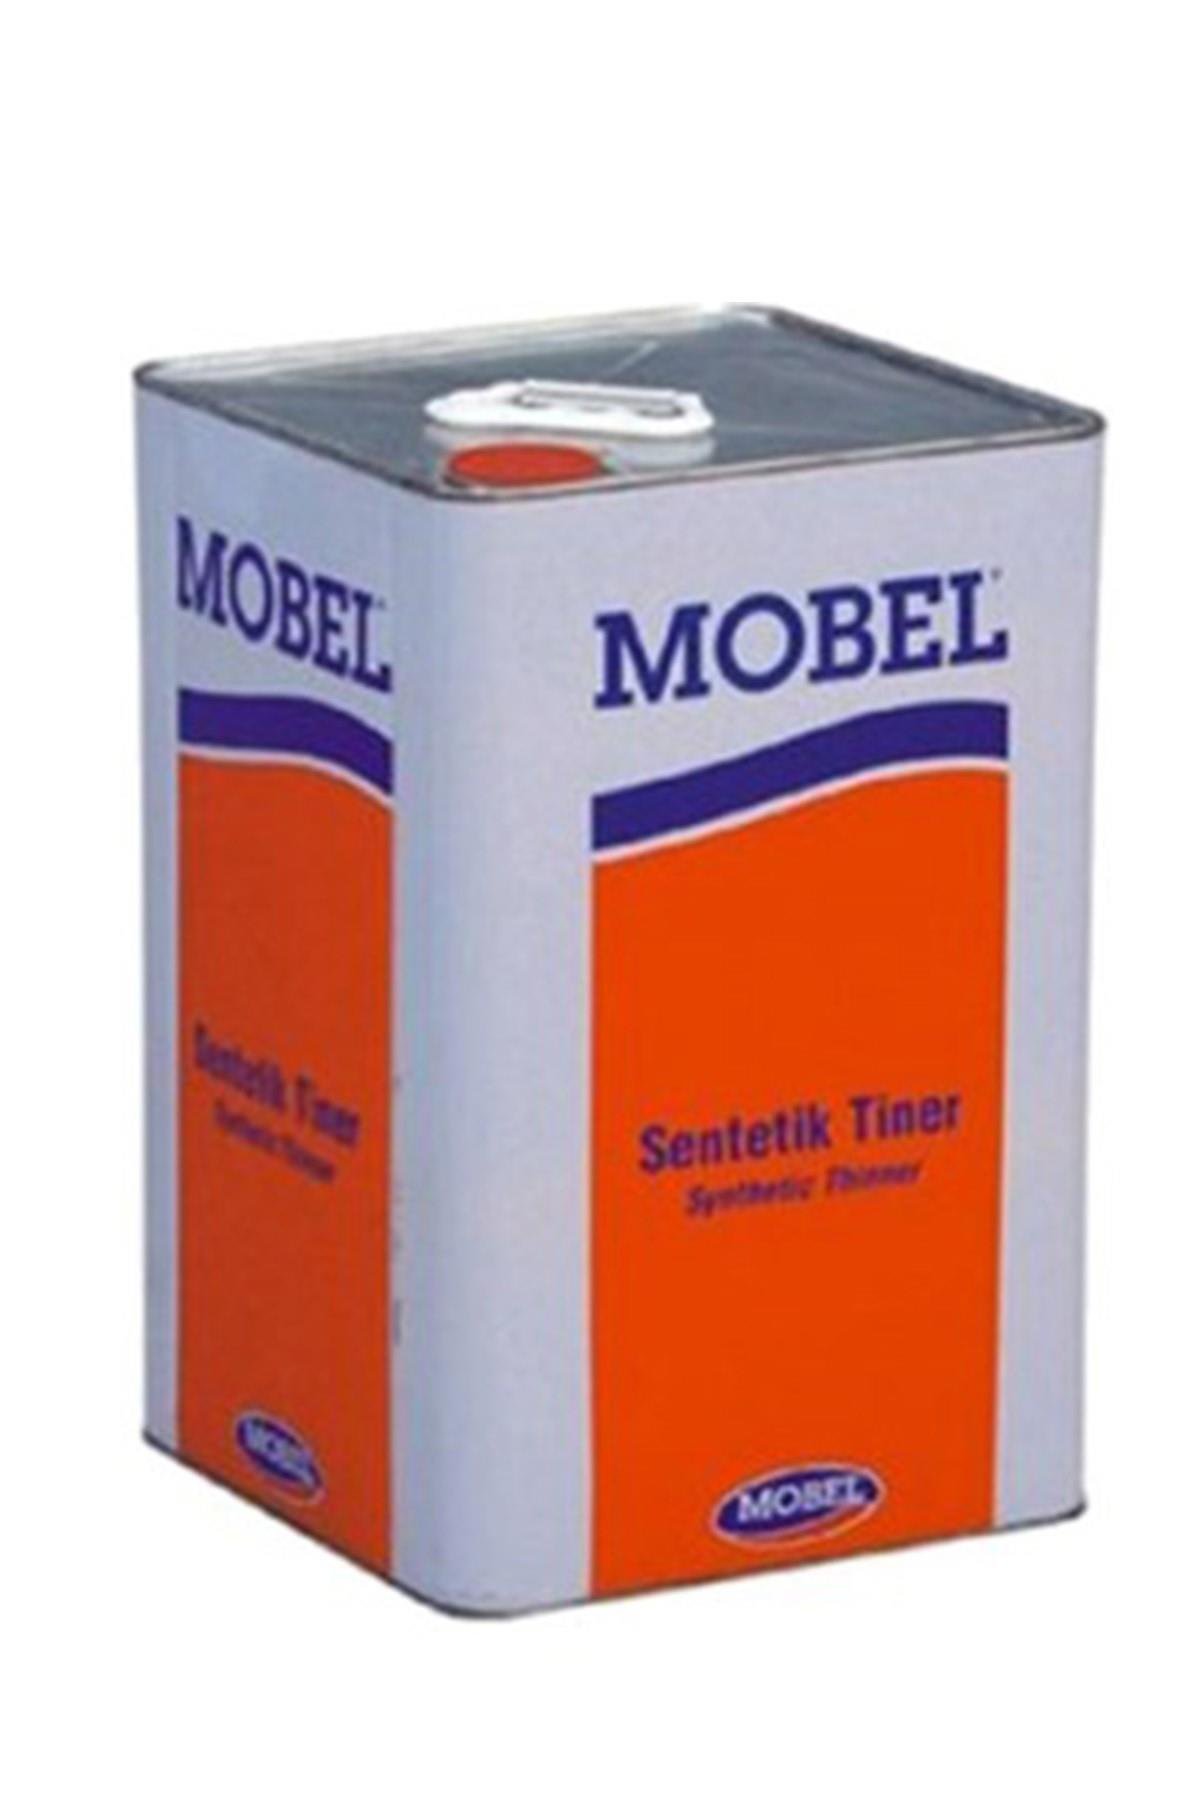 Mobel Sentetik Tiner Teneke 10 Litre en uygun fiyatlar ve taksit  seçenekleriyle senelyapimarket.com'da